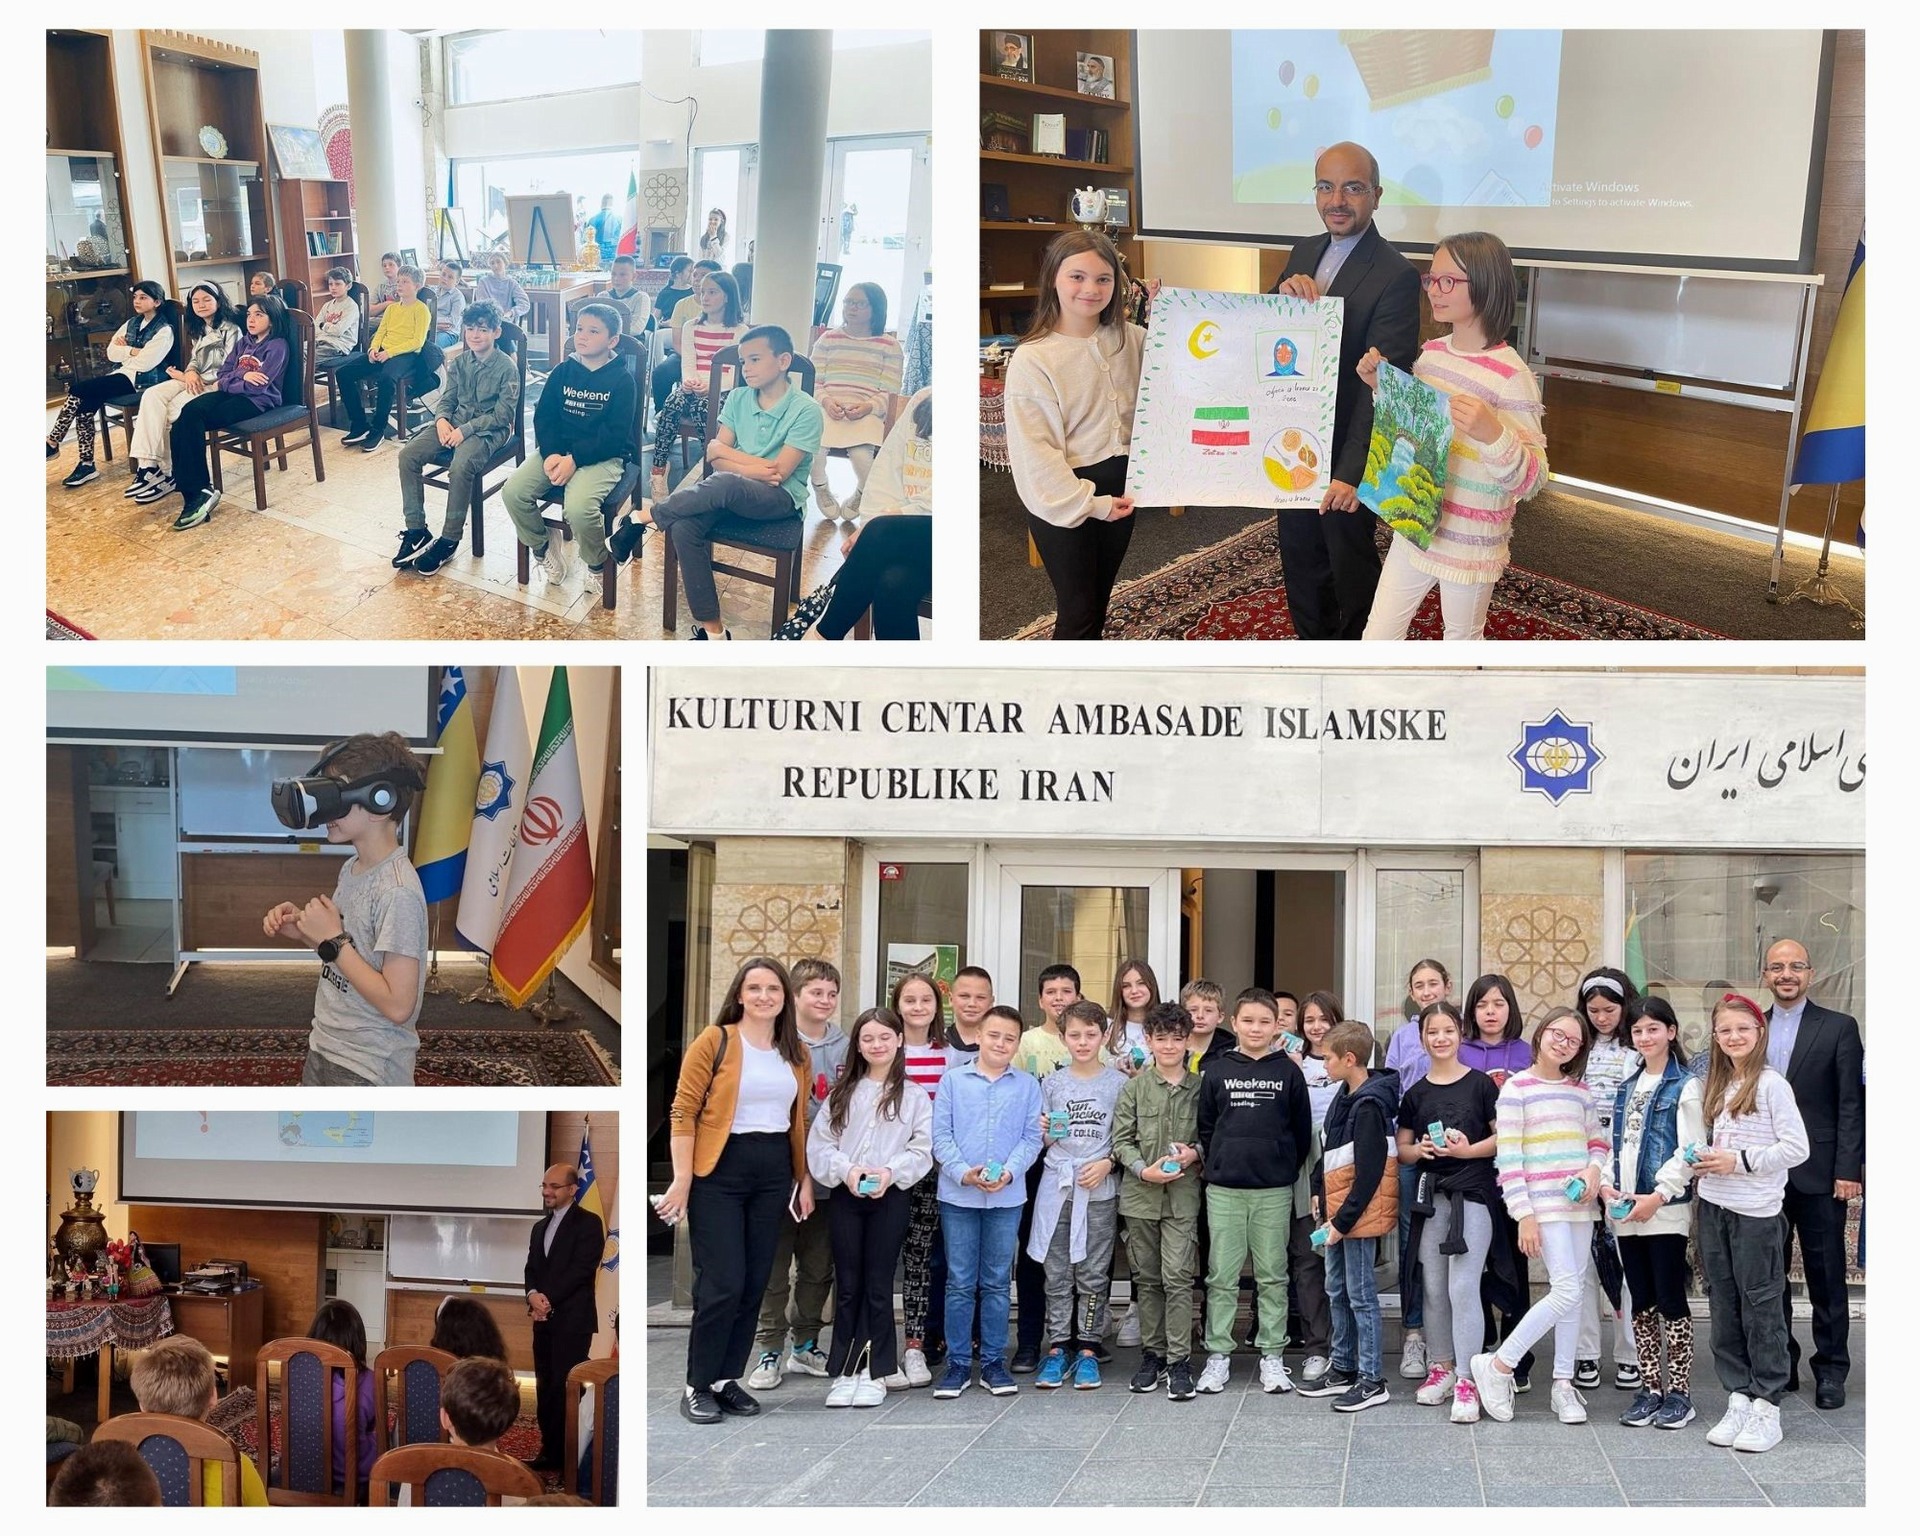 کارگاه آشنایی با جغرافیا، تاریخ و فرهنگ ایران برای دانش آموزان بوسنیایی